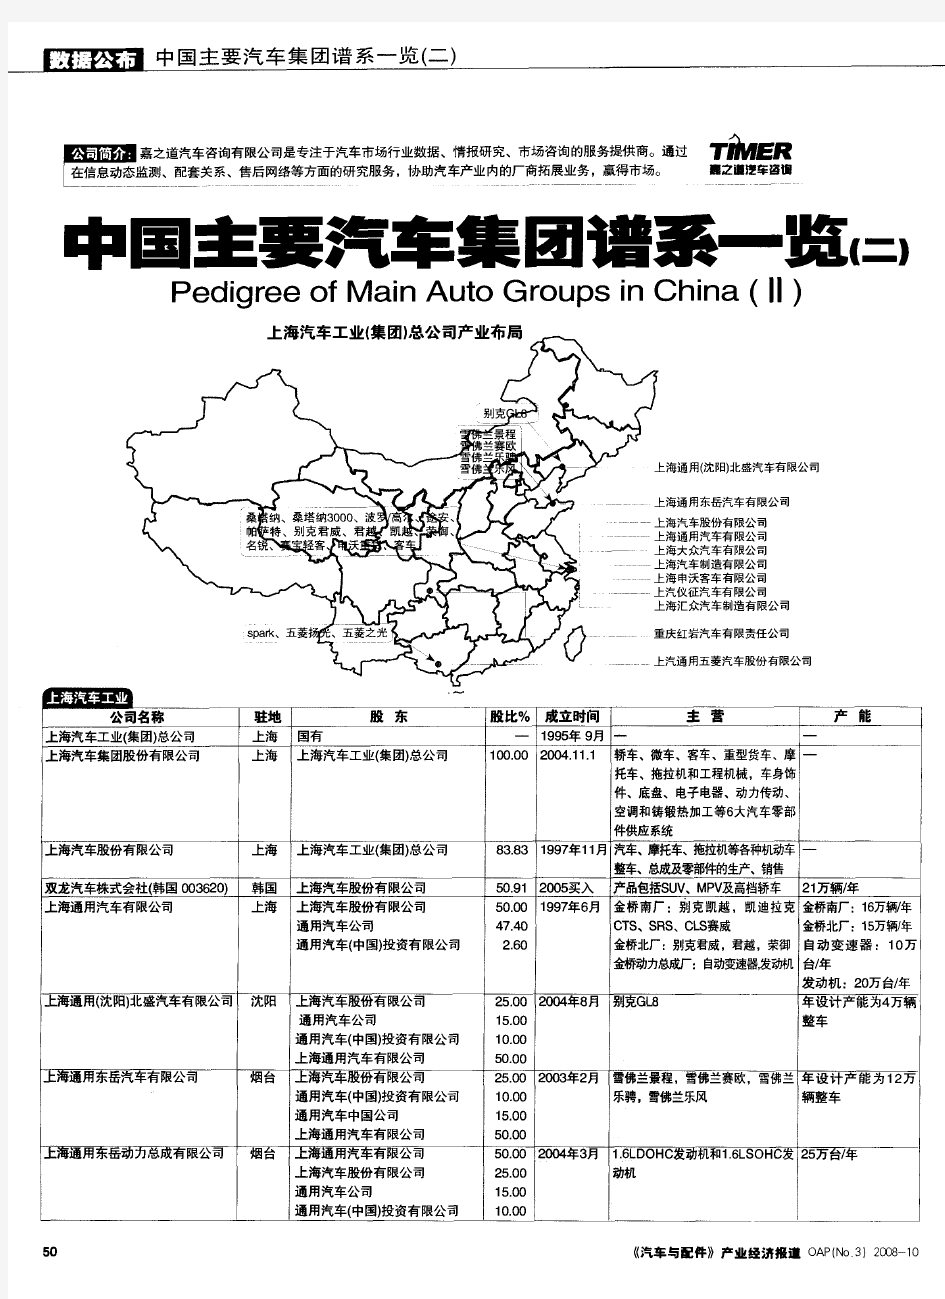 中国主要汽车集团谱系- 资料共享(上汽,北汽,一汽,东风,广汽等)